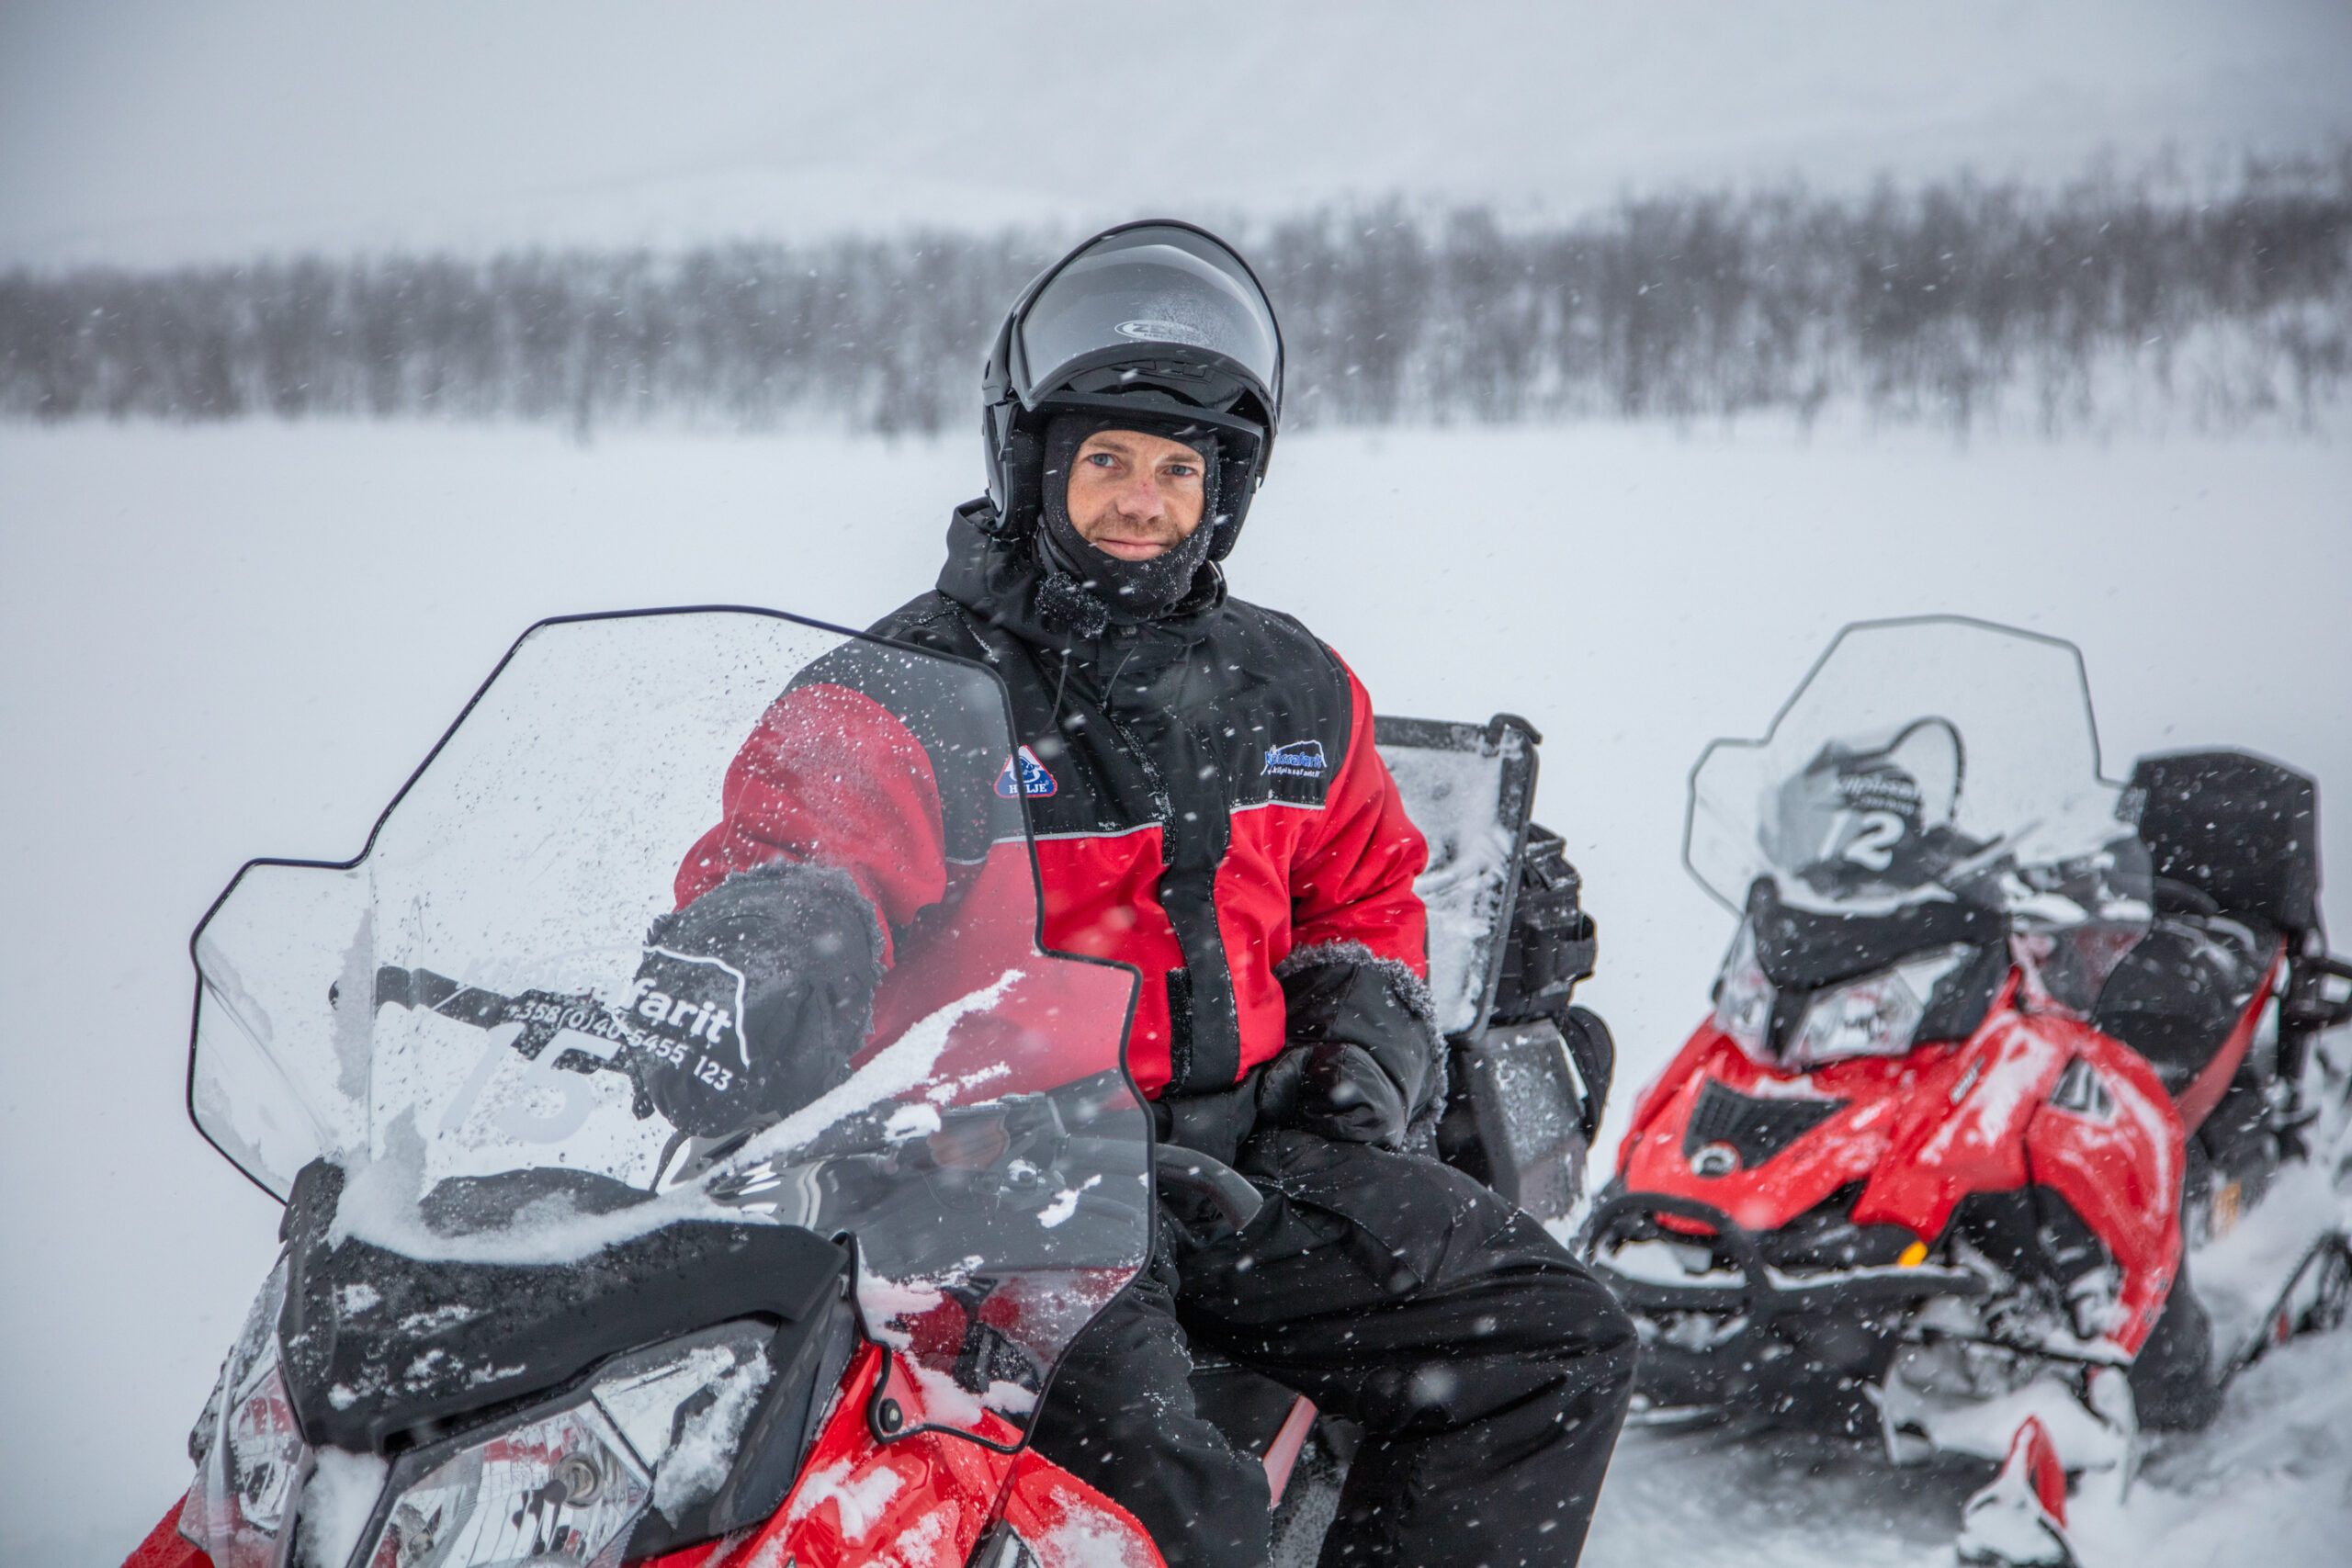 Viagens em 2021. Daniel Nunes com roupa propícia para neve preta e vermelha, capacete, em meio a uma paisagem branca nevada.